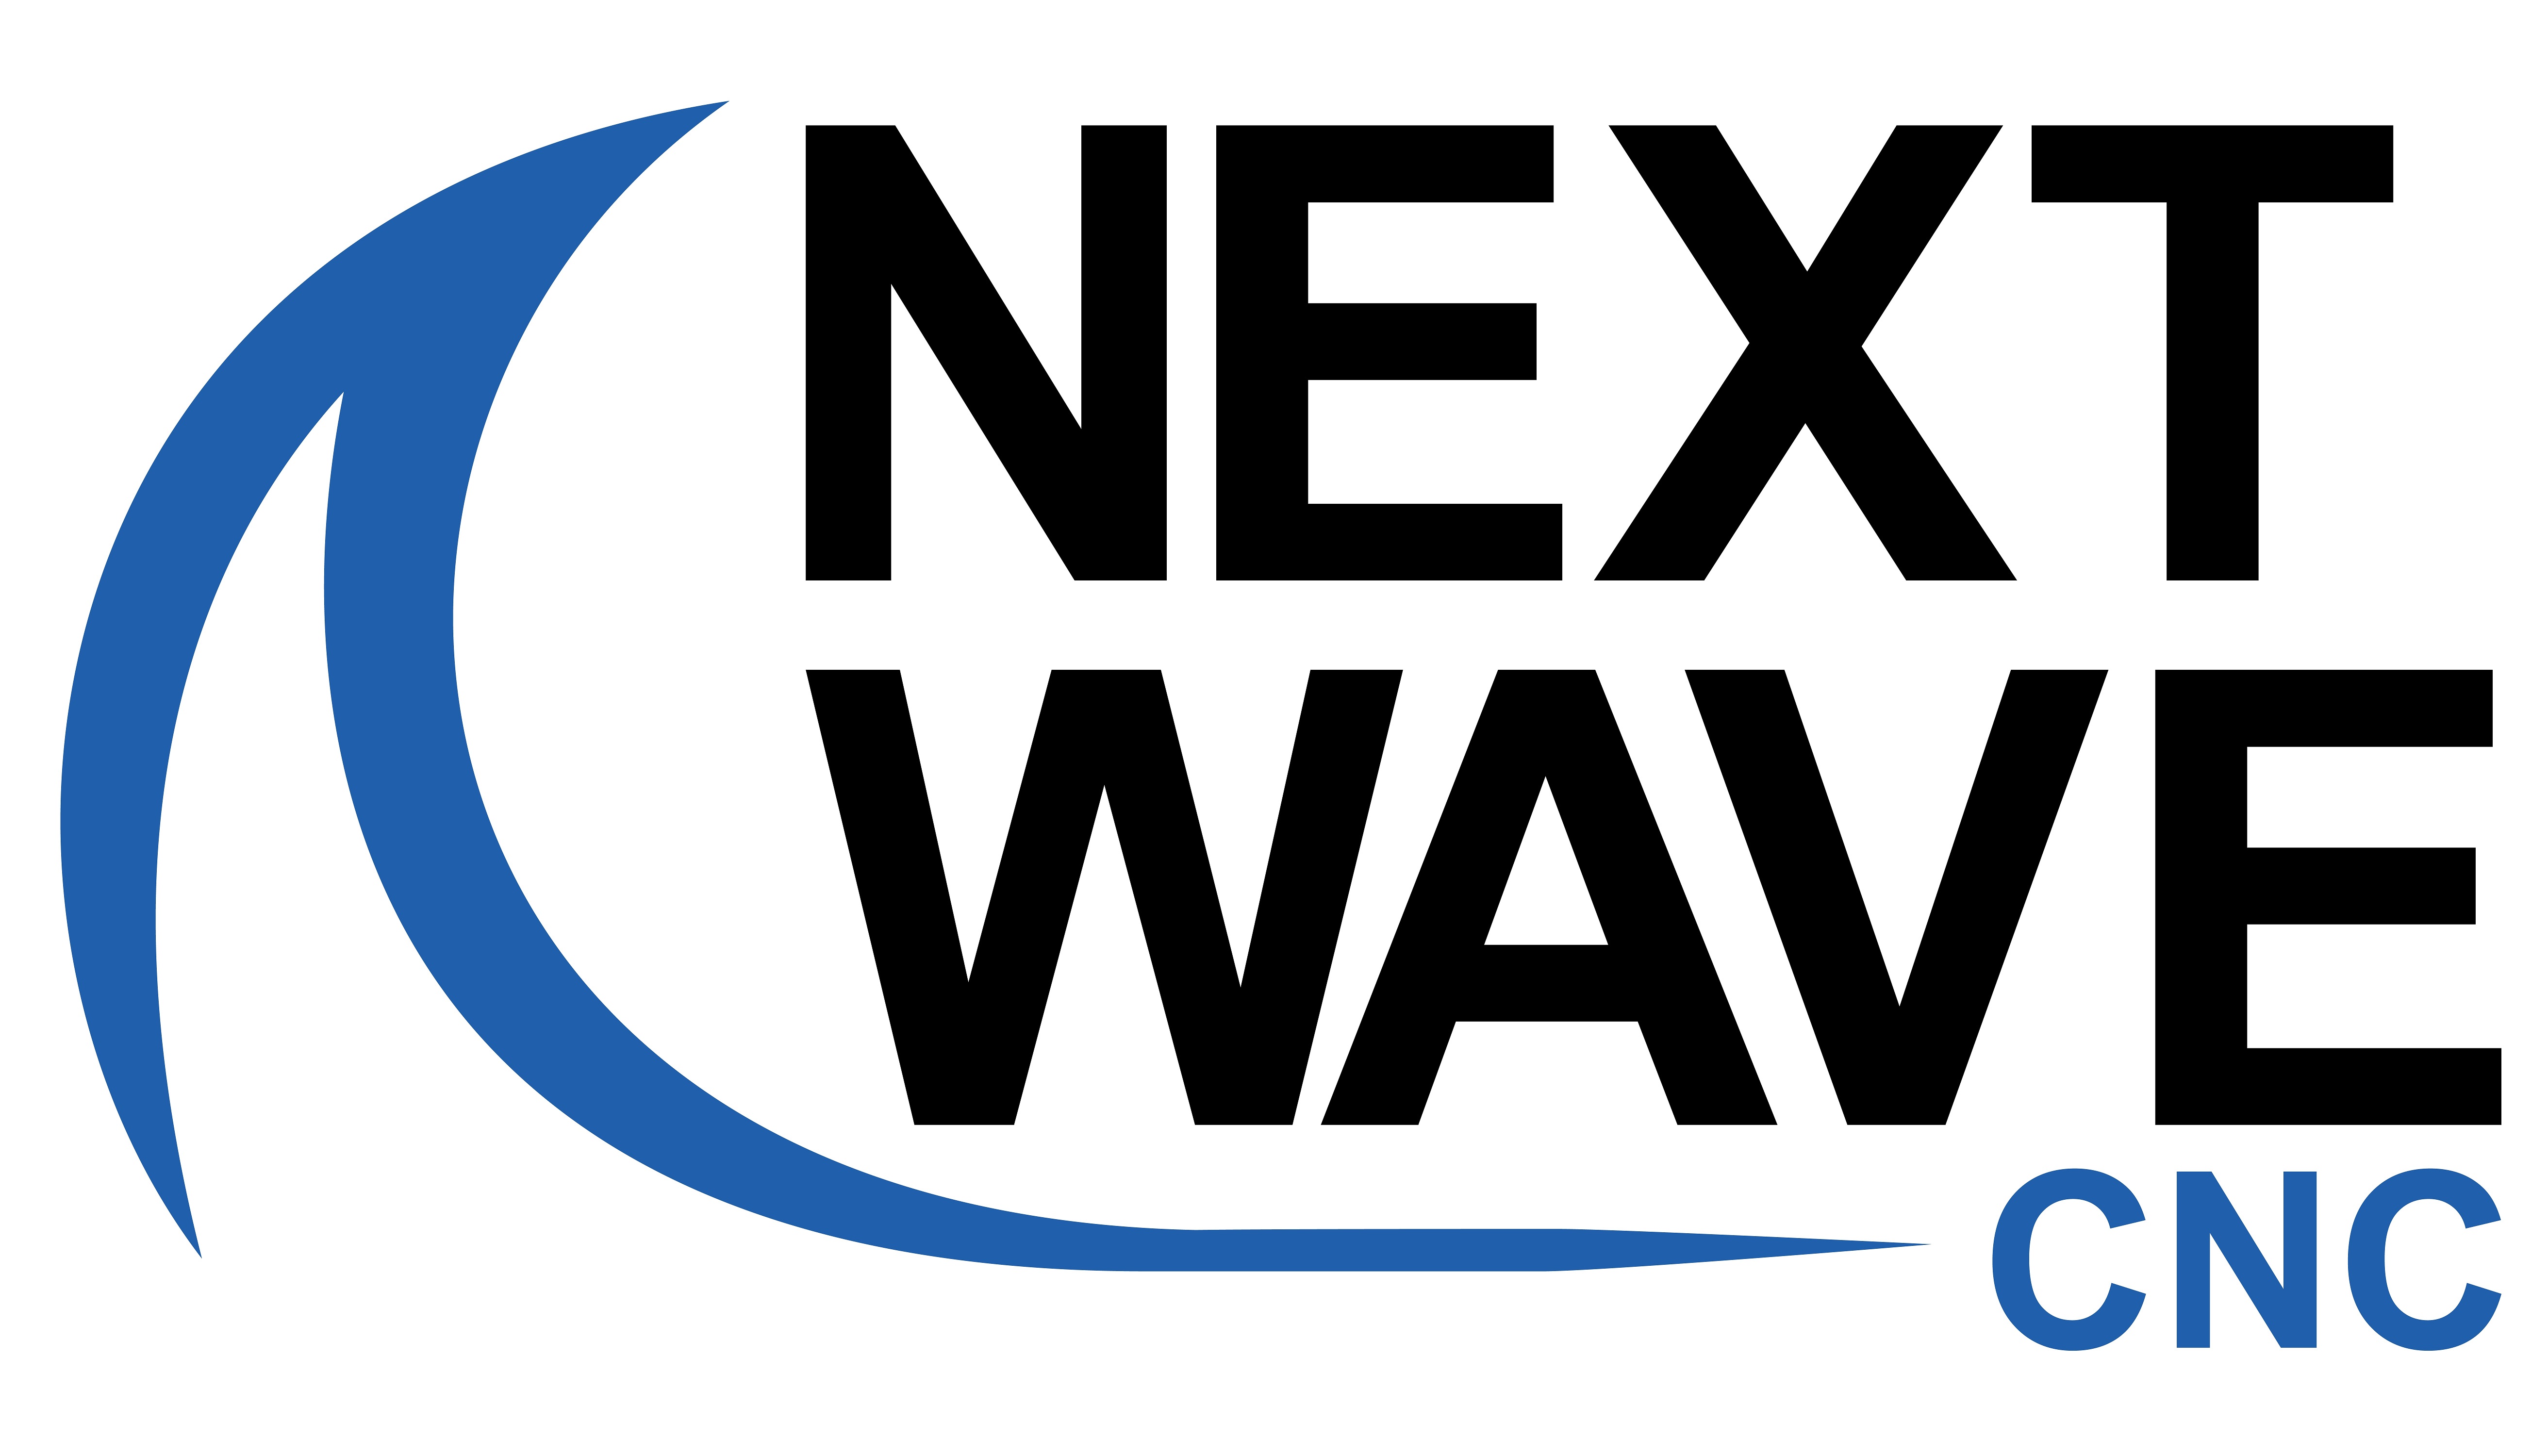 Next Wave CNC